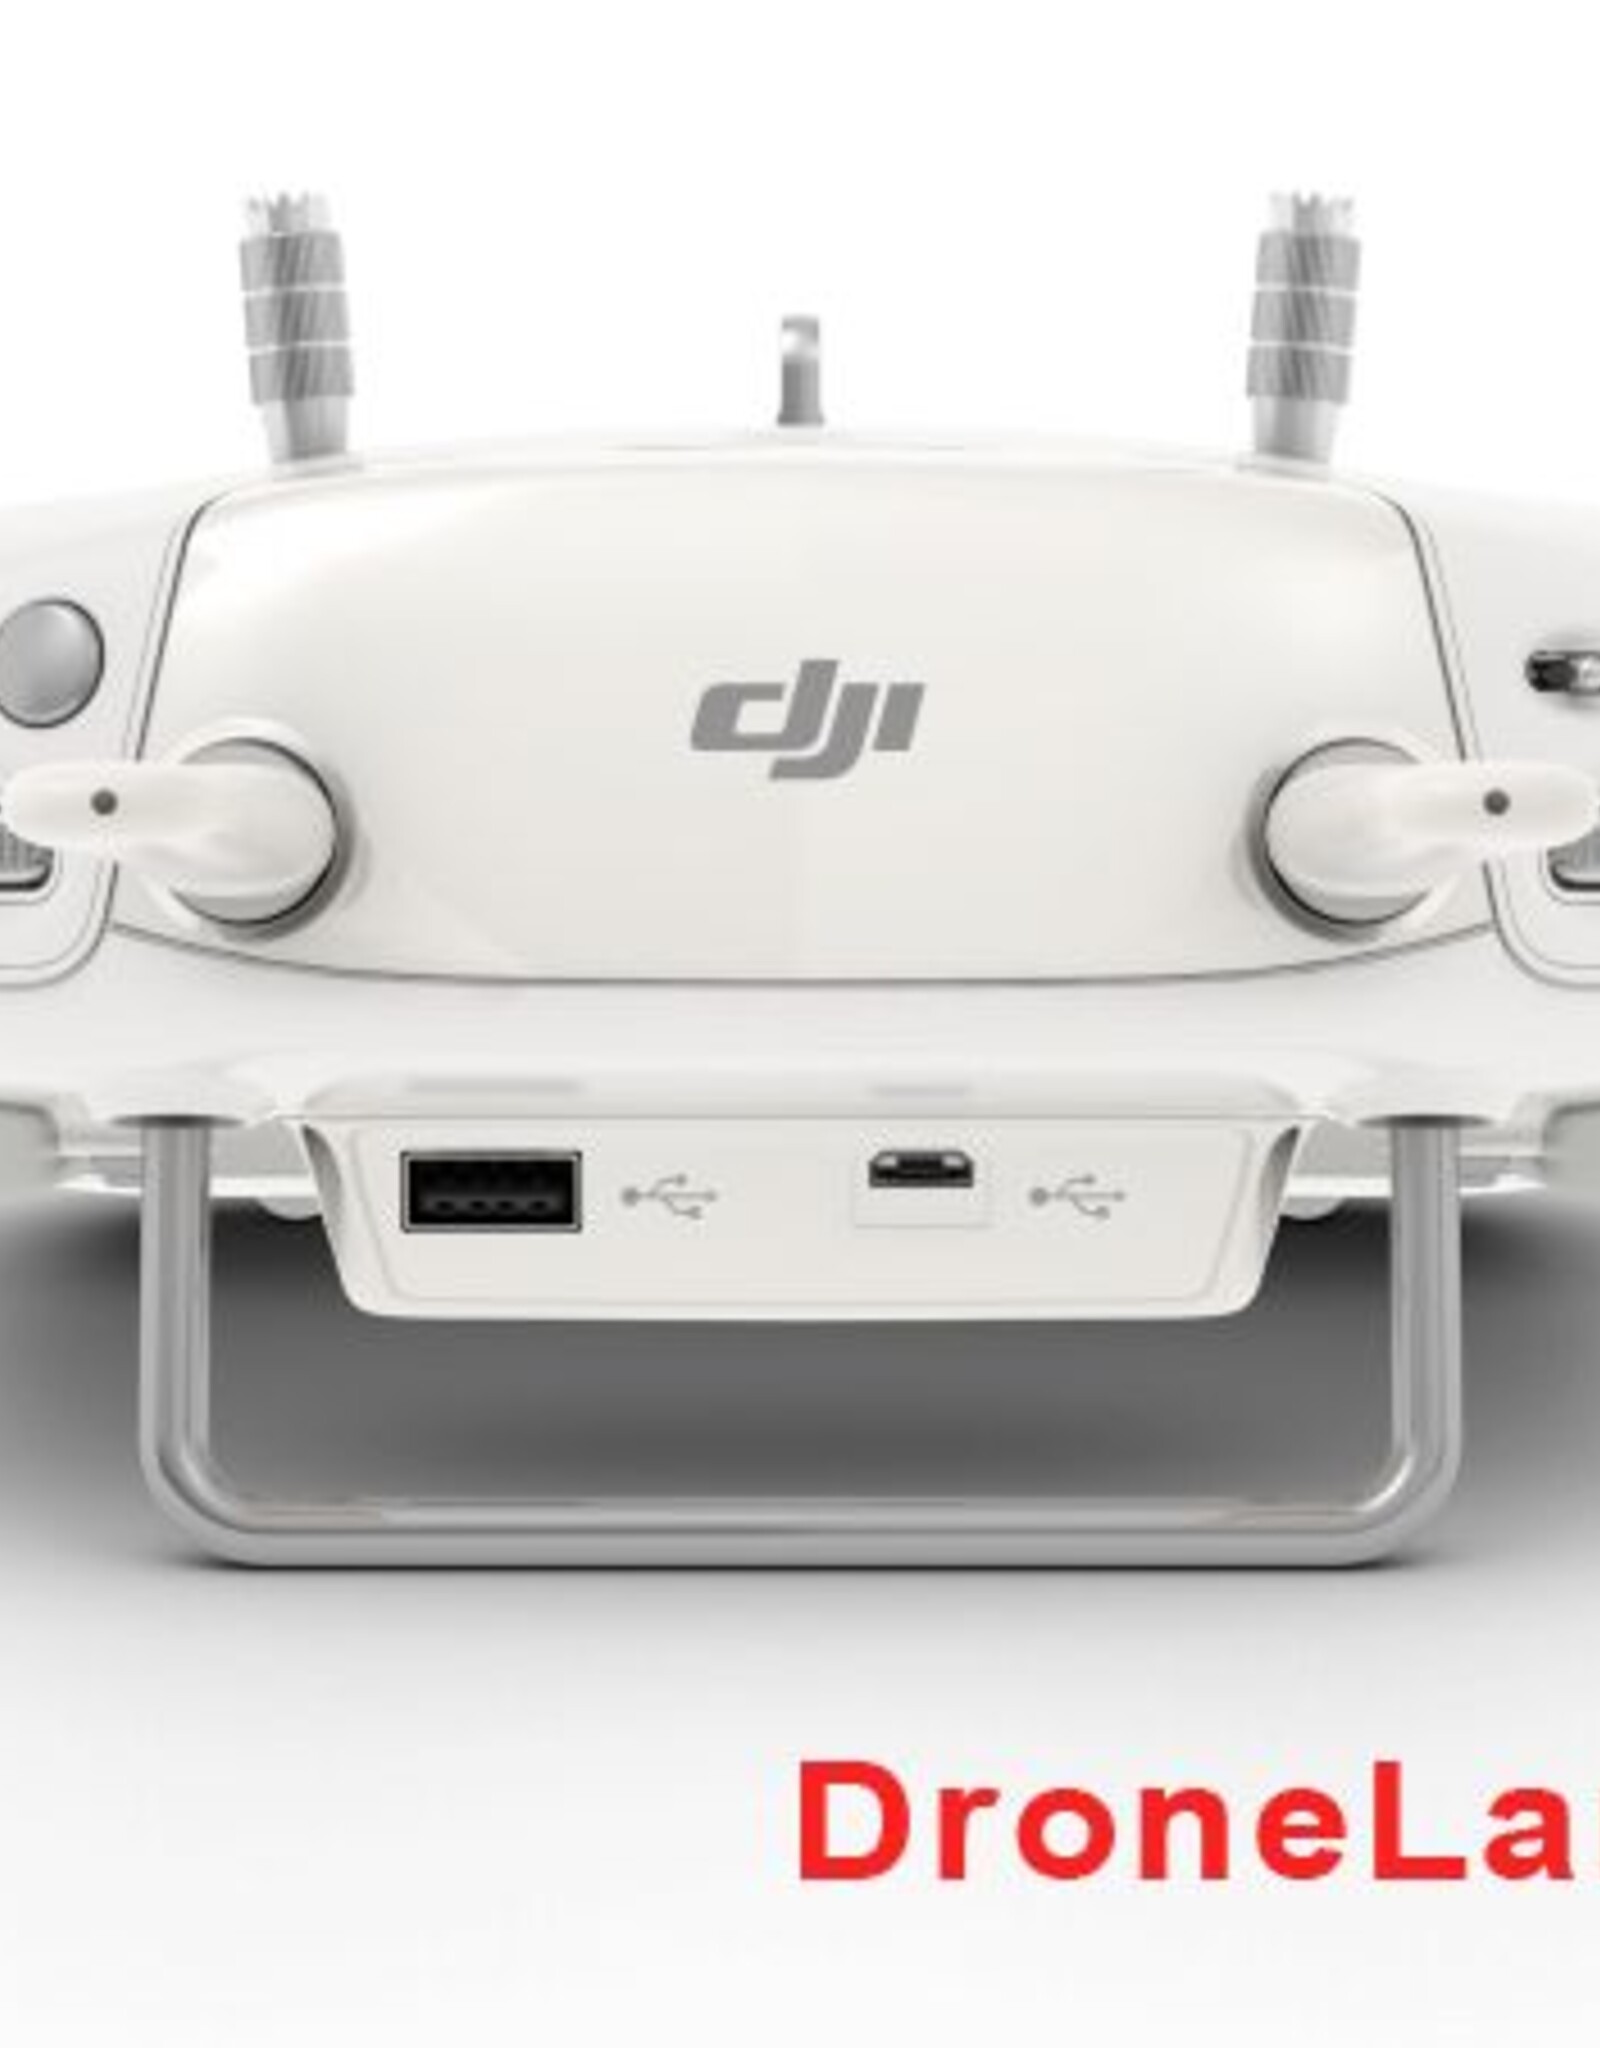 DJI DJI Phantom 3 Remote Controller (Part 10)